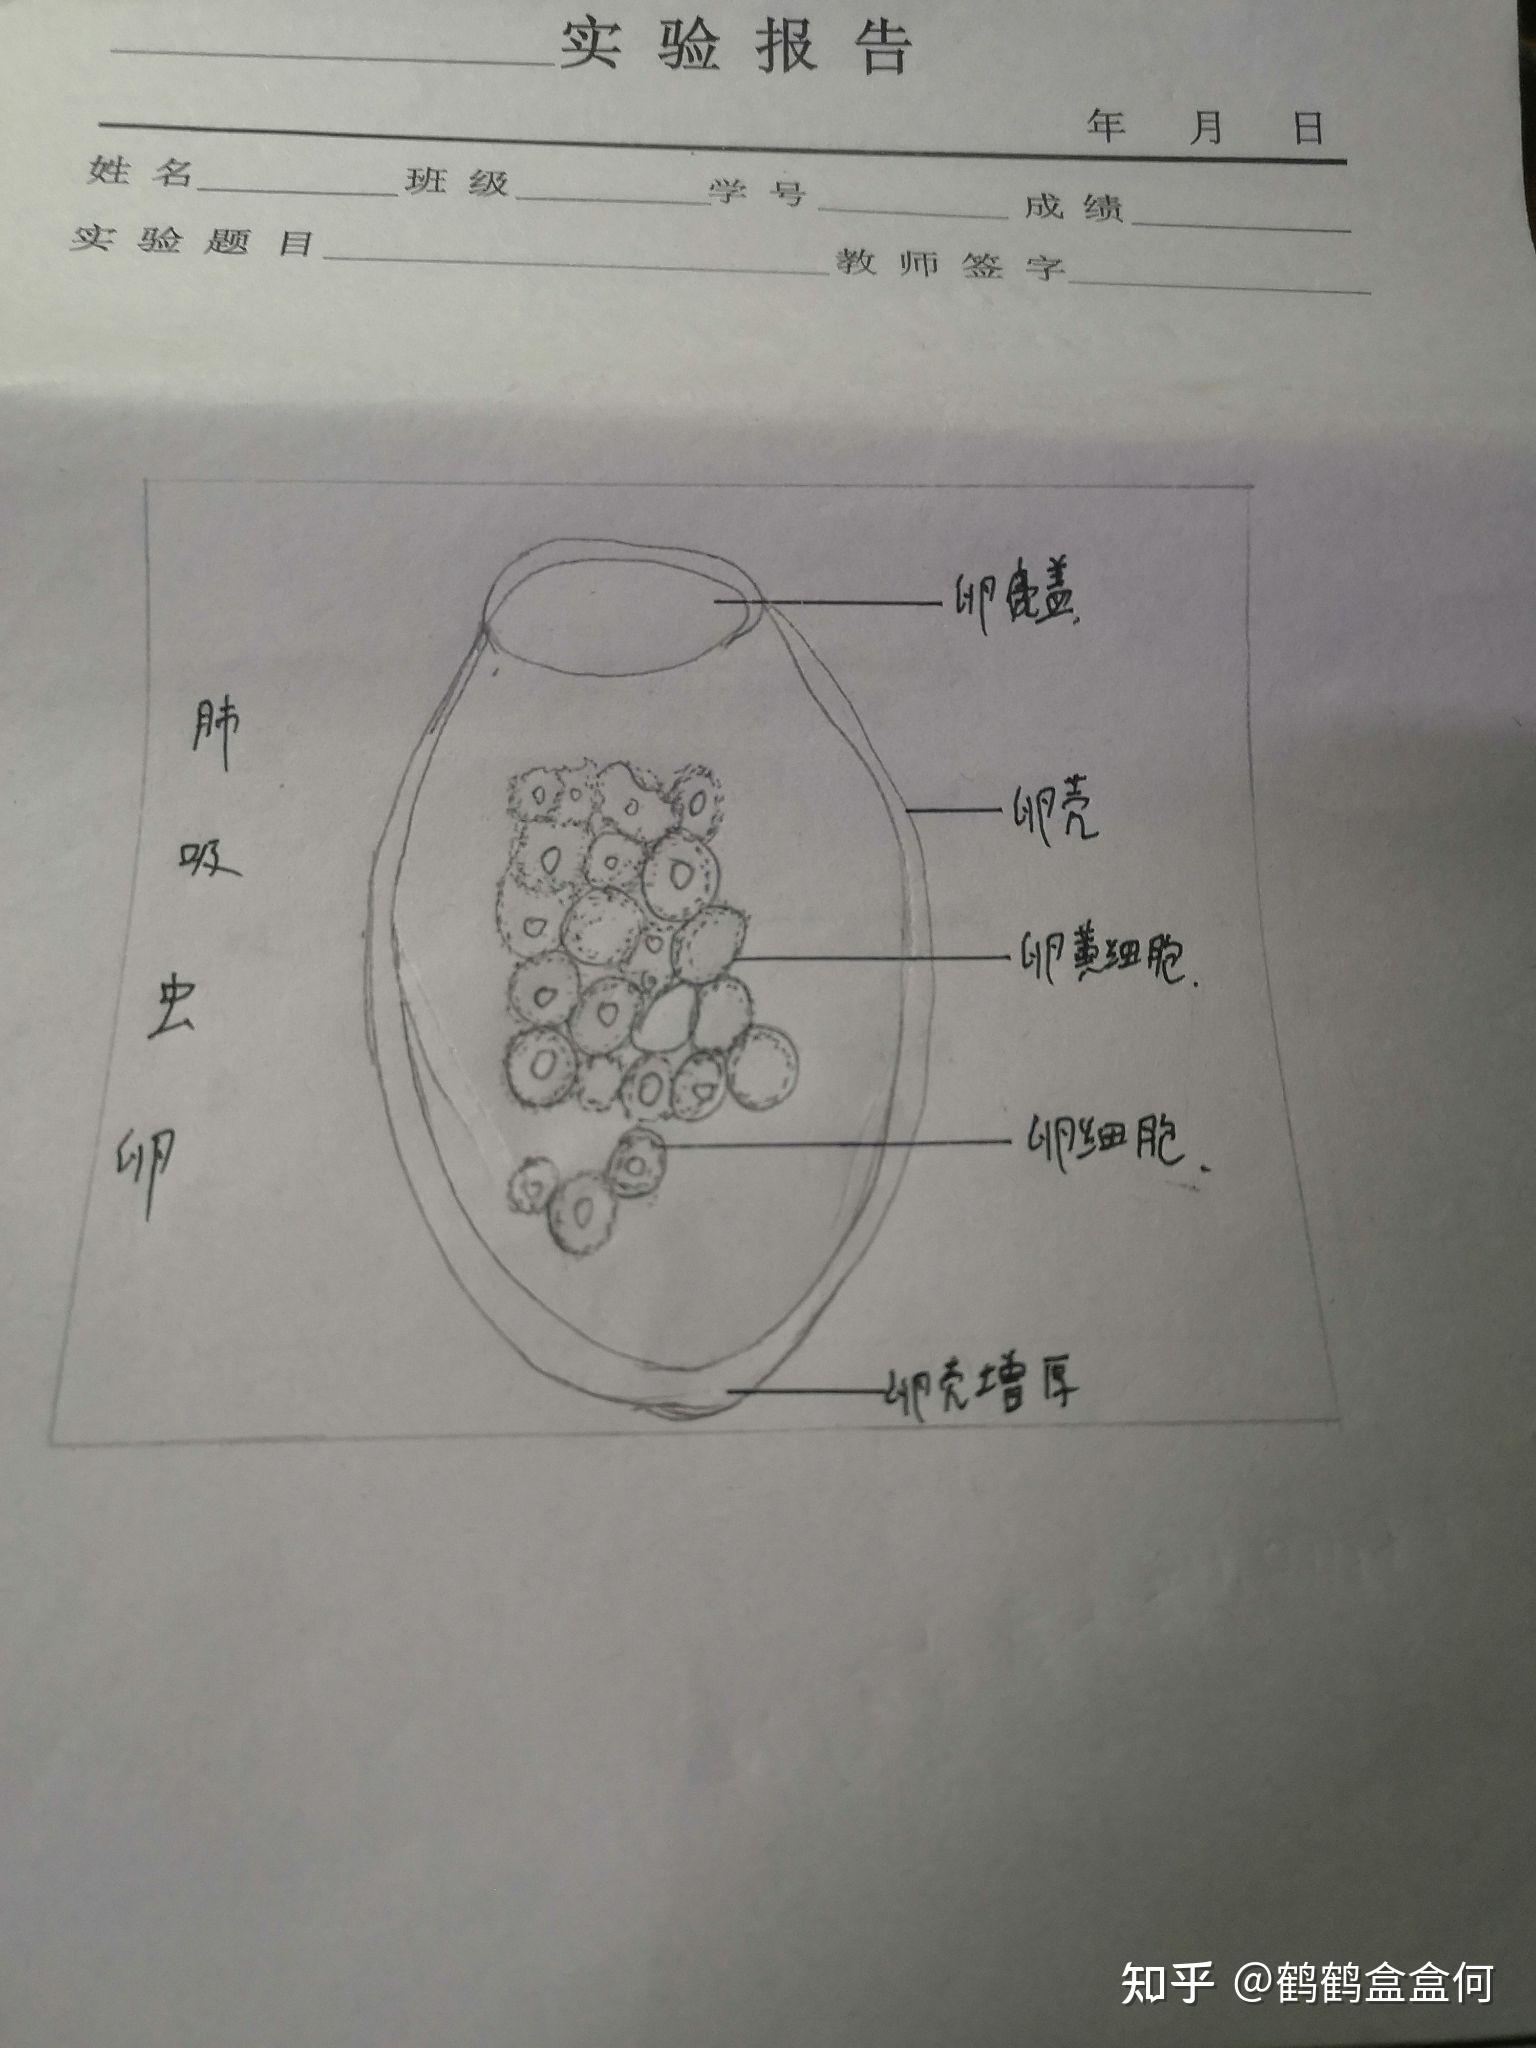 中性分叶核粒细胞绘图图片